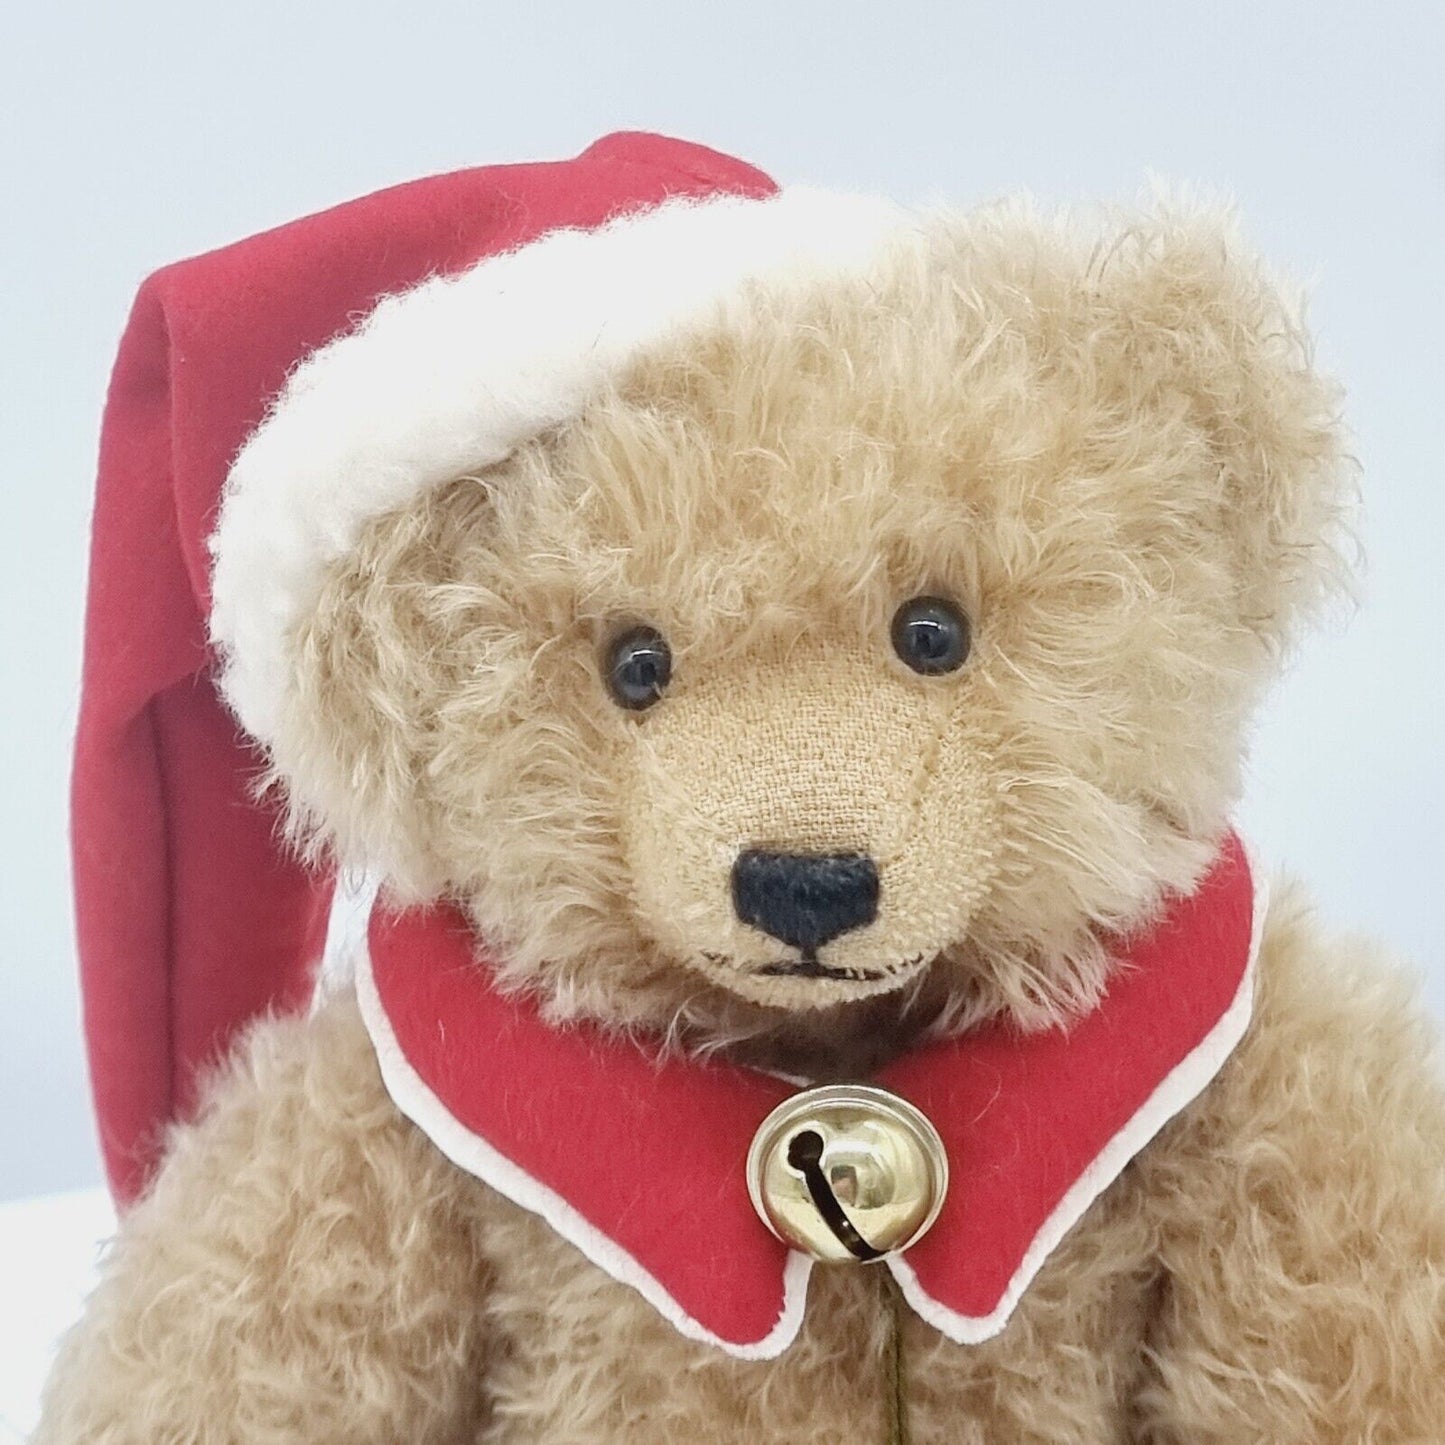 Teddy-Hermann Teddybär Weihnachtsmann 30 cm limitiert auf 300 Stück